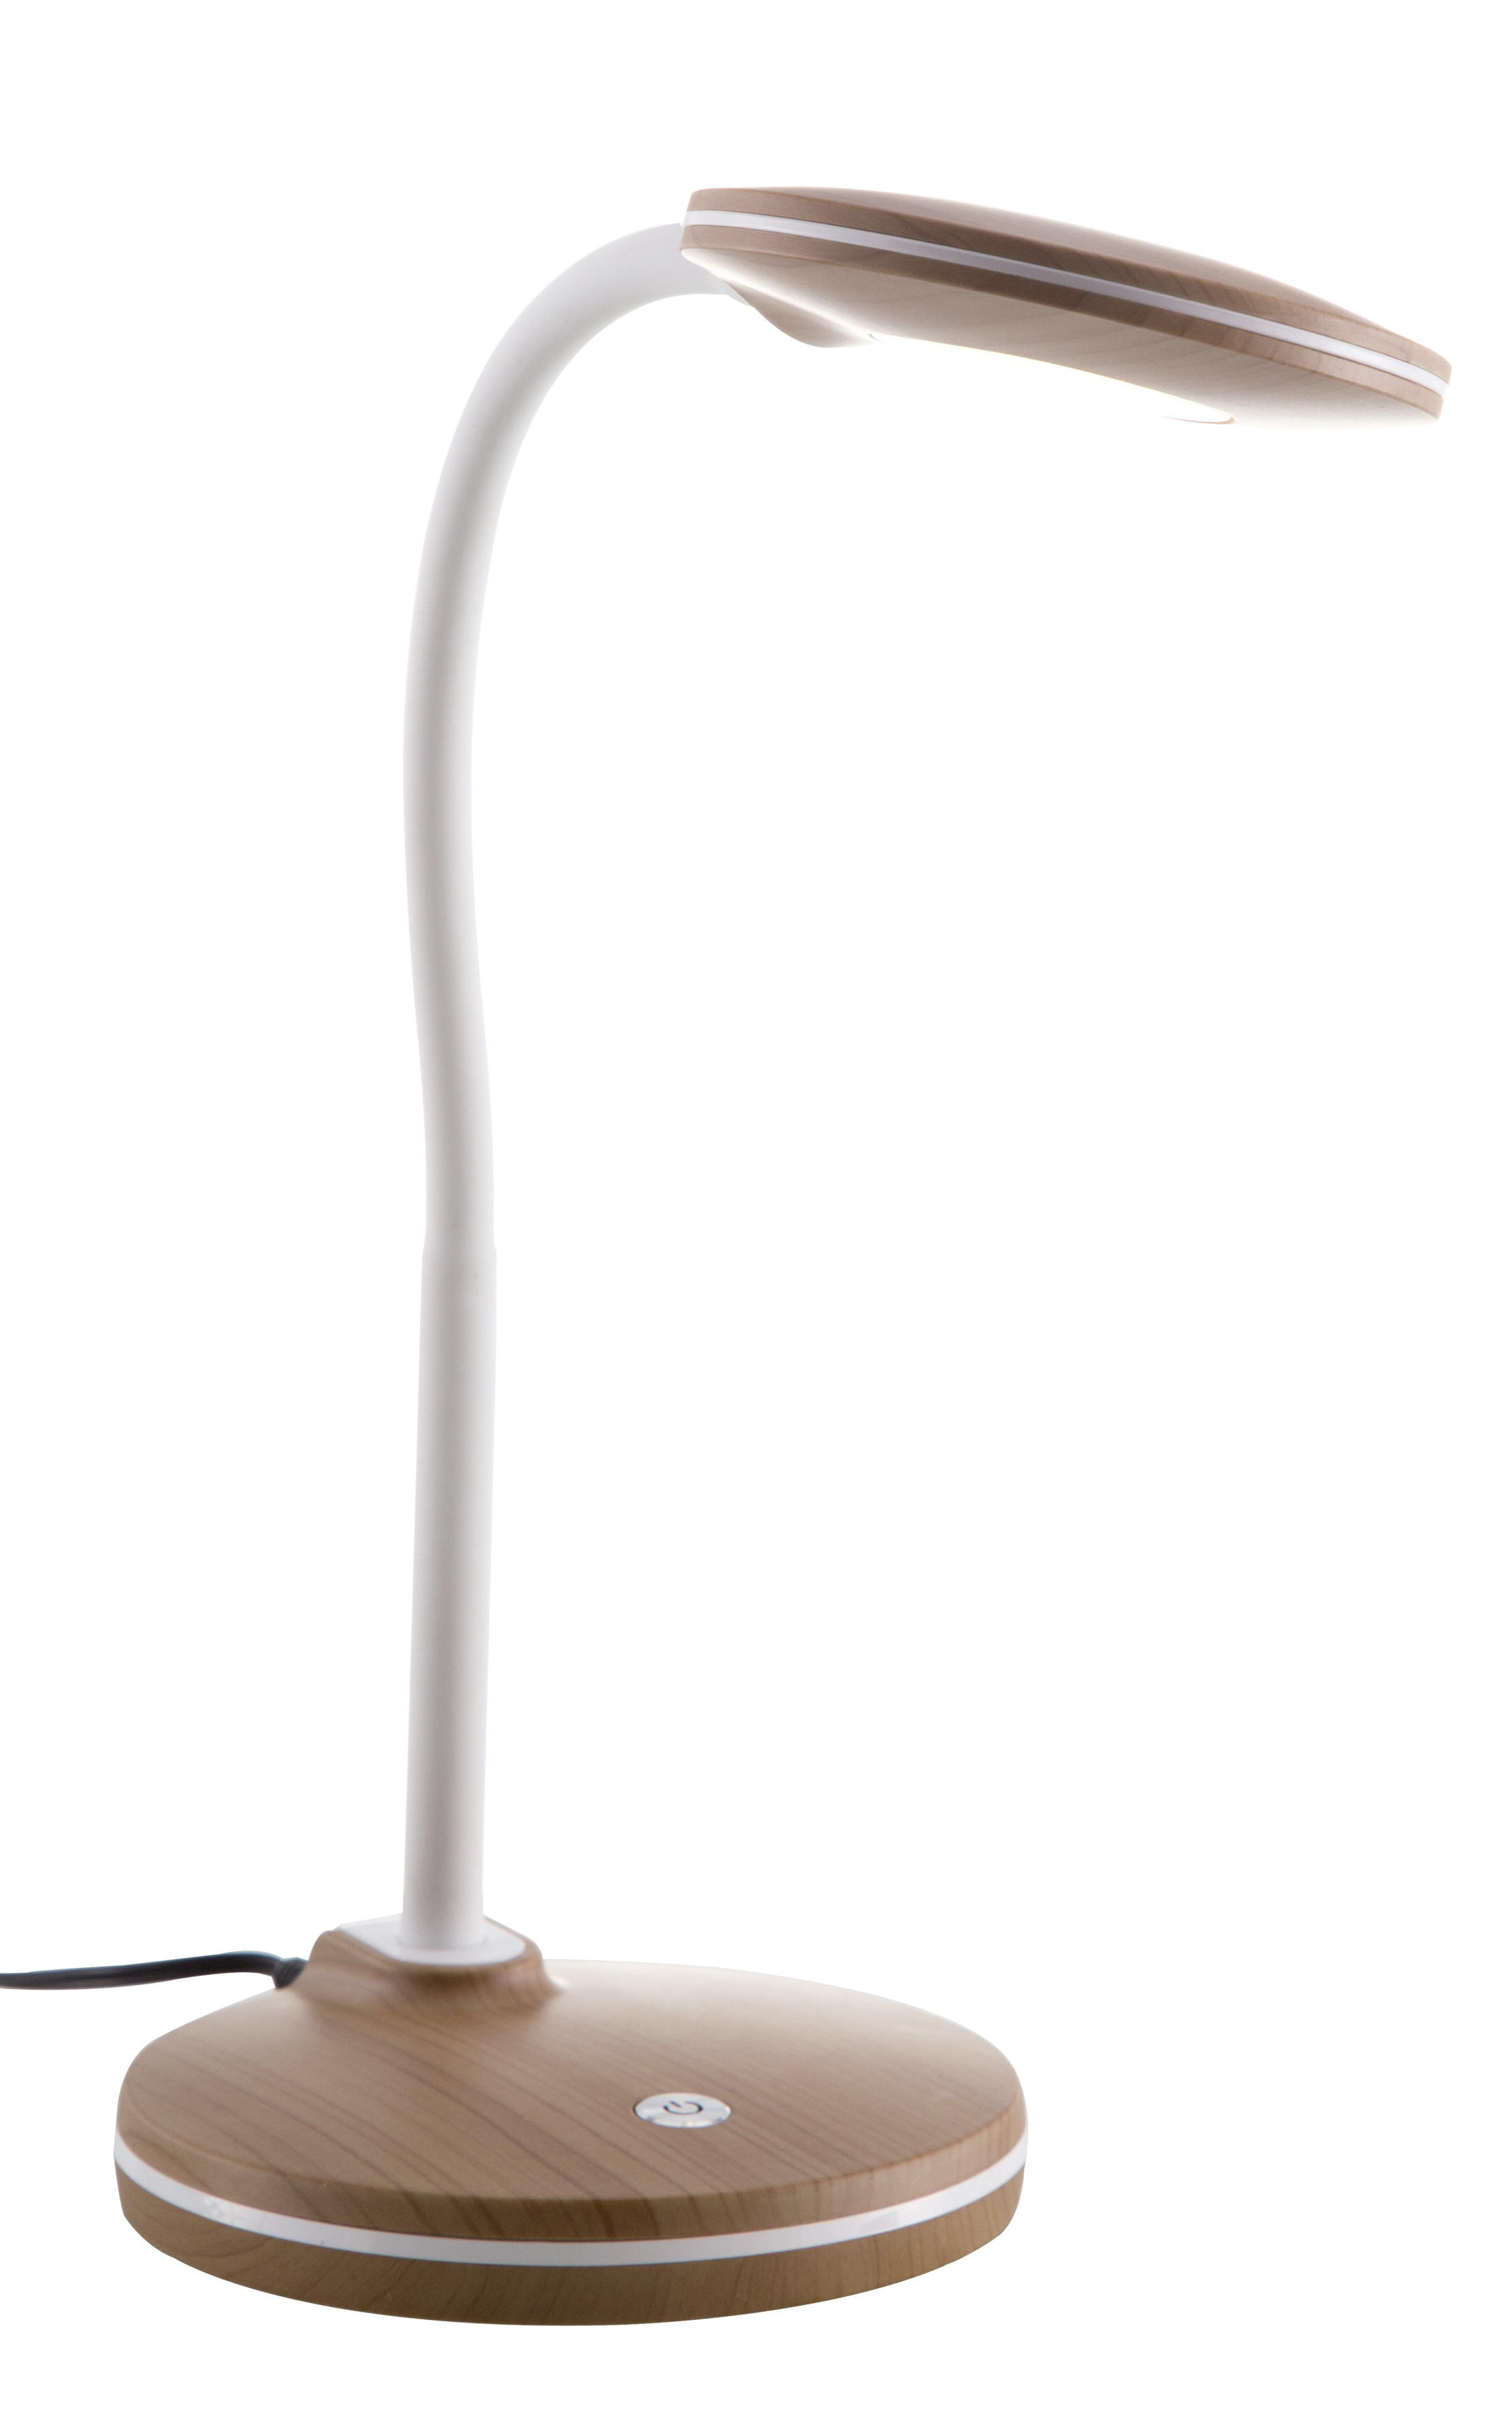 LED STOLNÁ LAMPA, stmievač s regulačným kolieskom, 13/32 cm  - farby dubu/biela, Natur, plast (13/32cm) - Xora